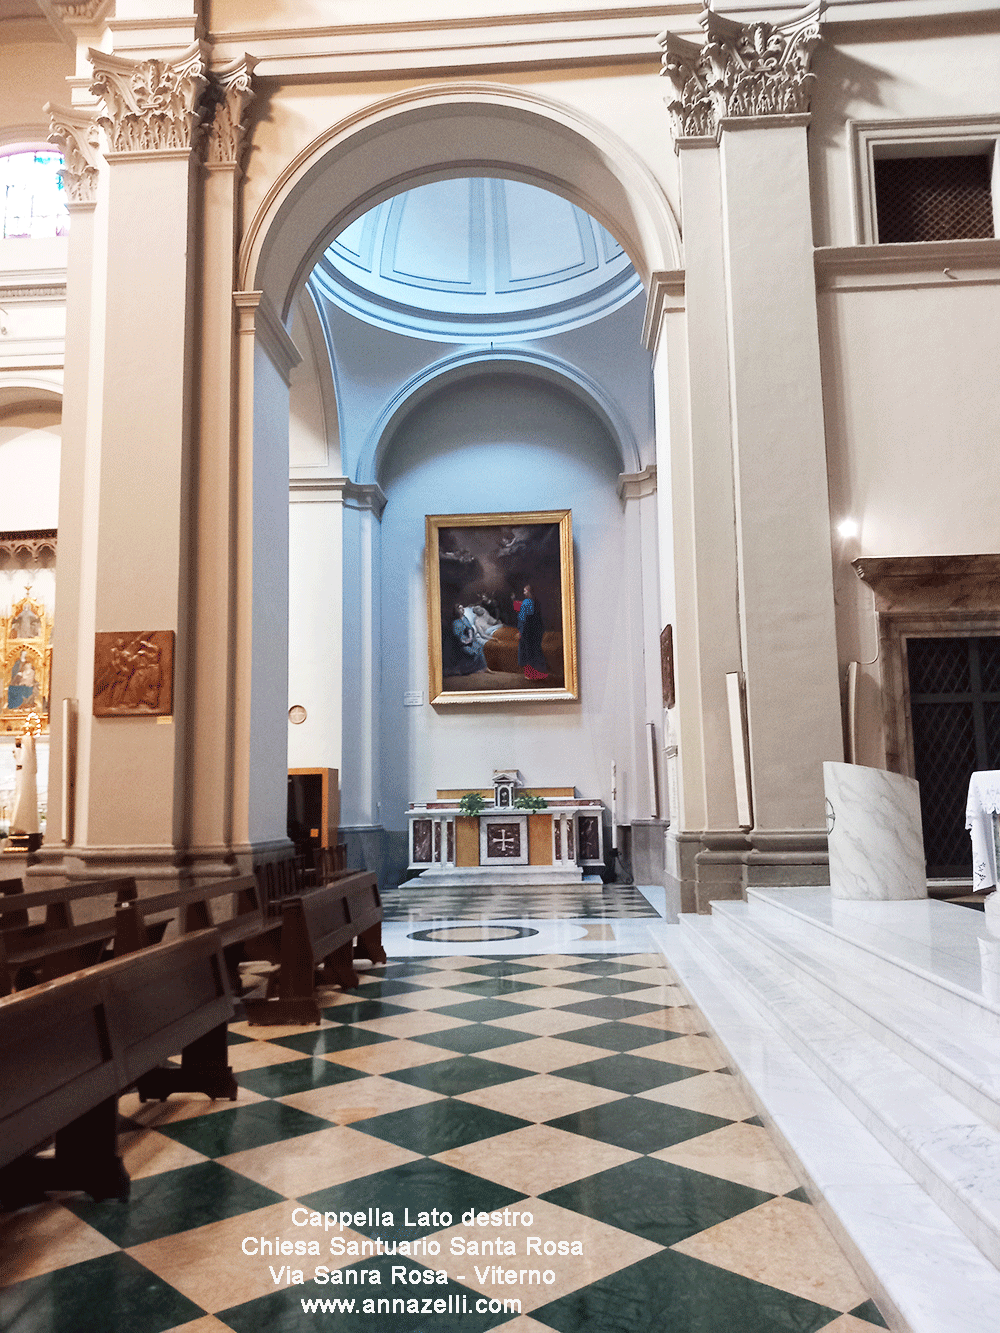 cappella lato destro chiesa santuario santa rosa viterbo info e foto anna zelli